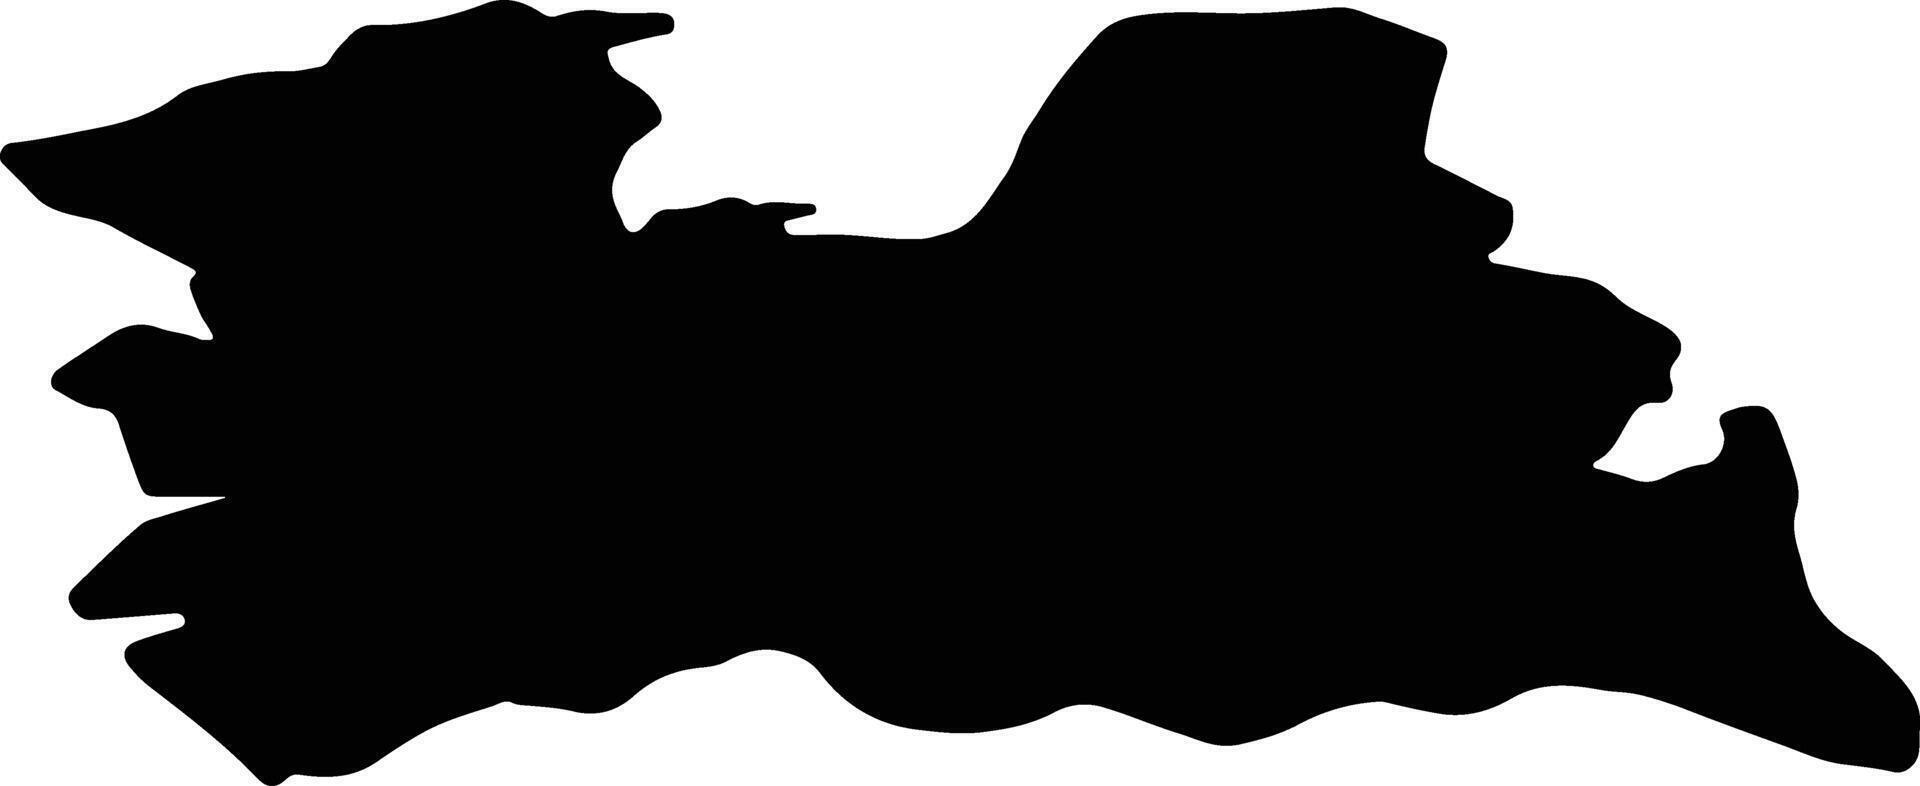 Utrecht Netherlands silhouette map vector